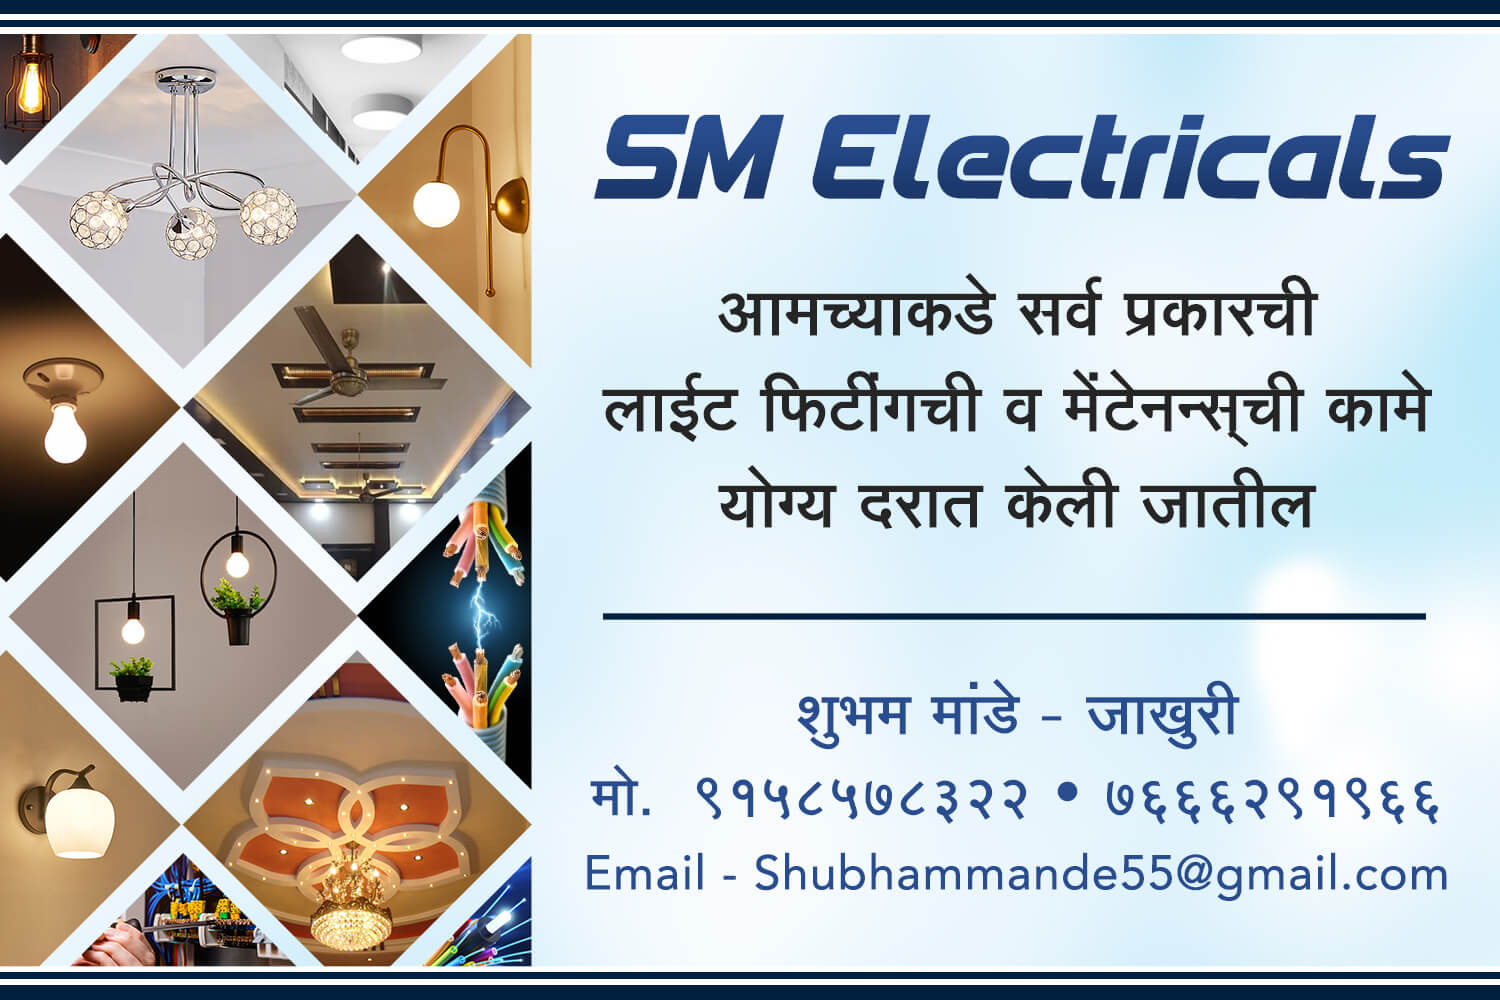 SM Electricals banner design